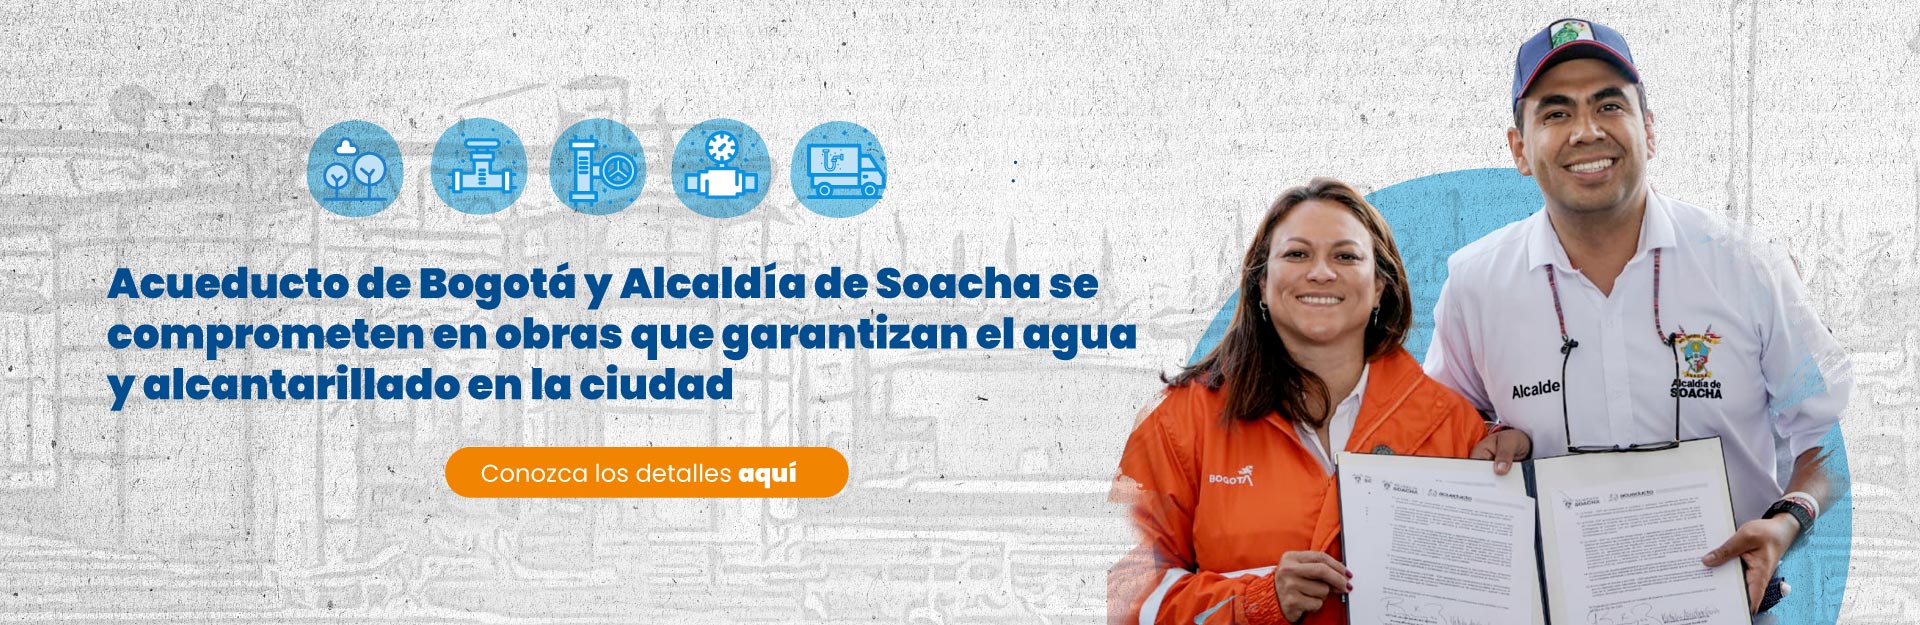 Acueducto de Bogotá y Alcaldía de Soacha se comprometen en obras que garantizan el agua y alcantarillado en la ciudad